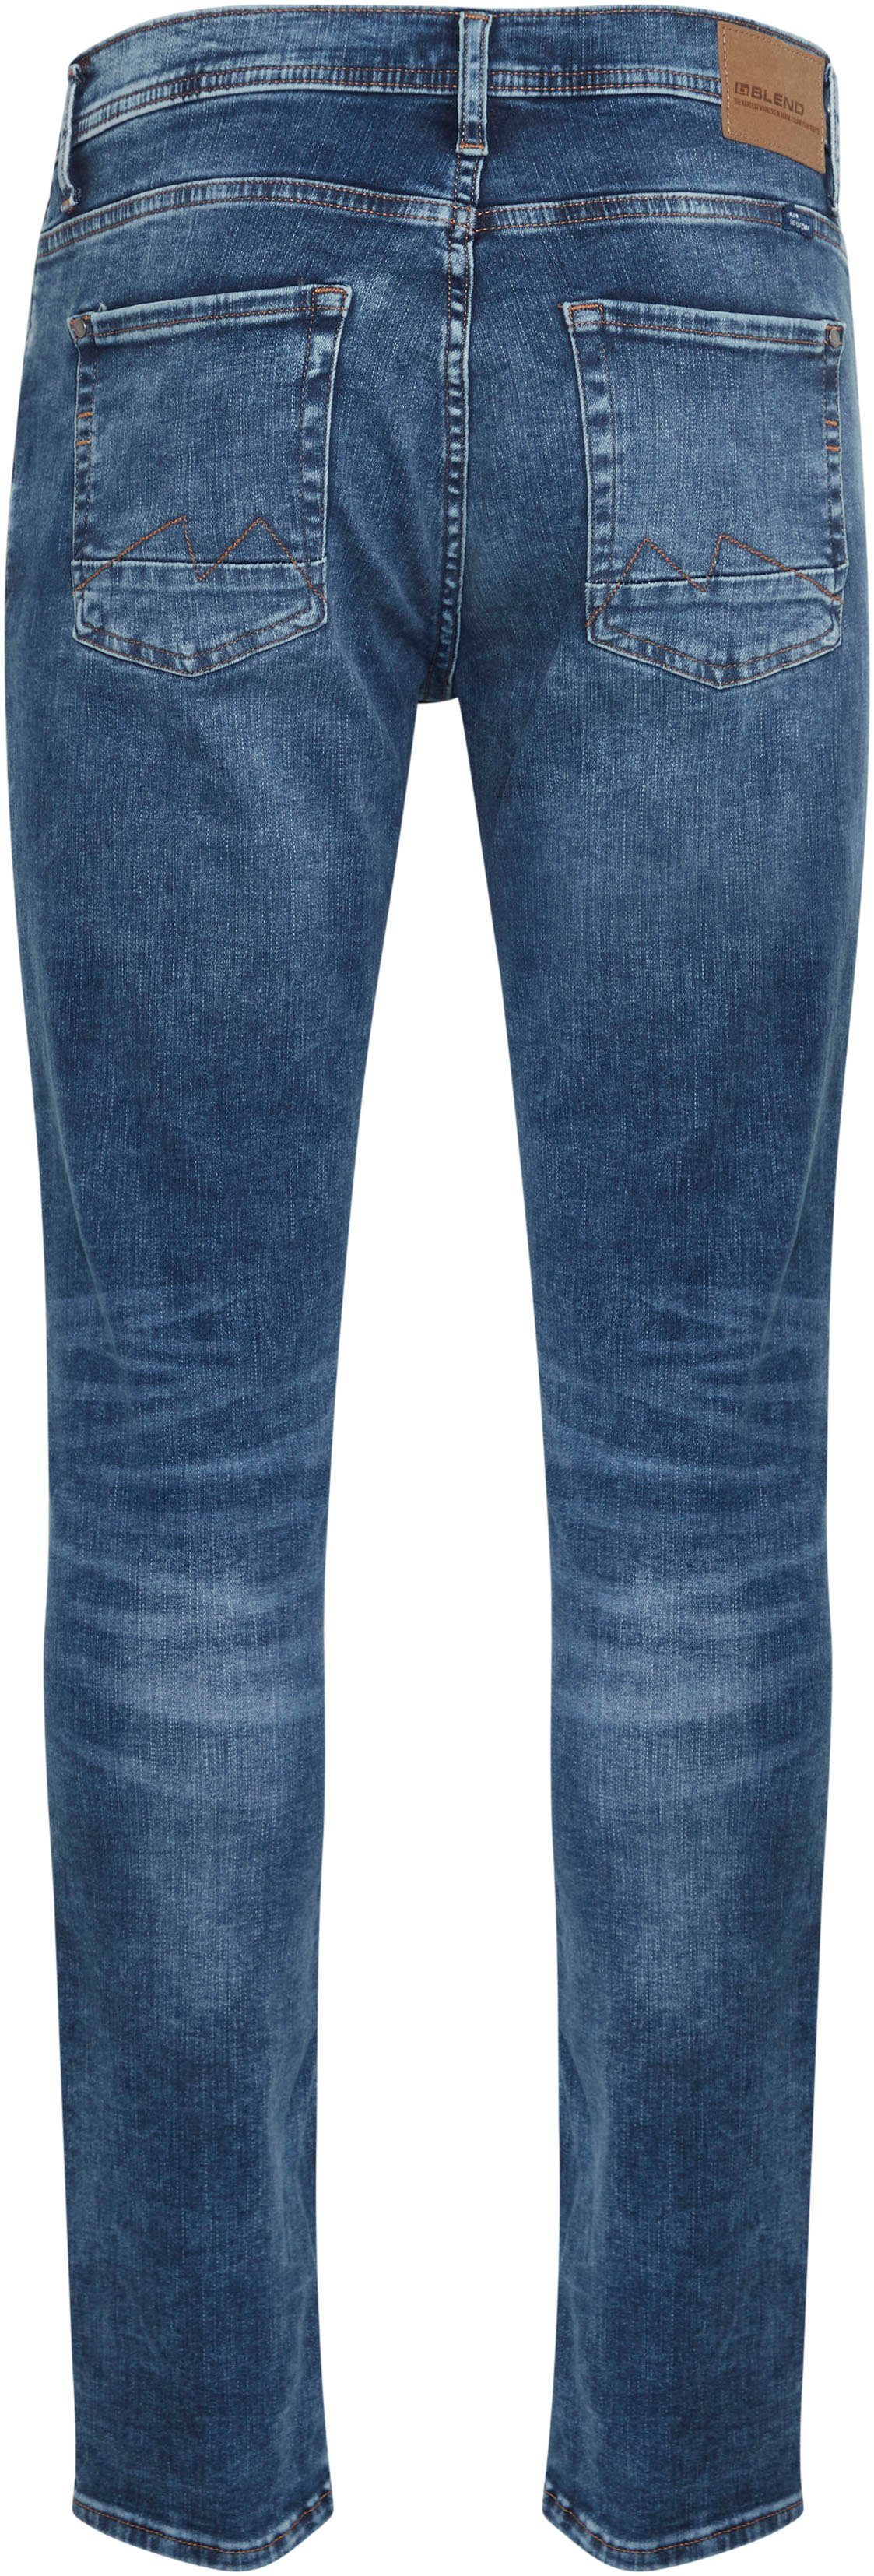 Blend Slim-fit-Jeans Multiflex Jet mid-blue-washed